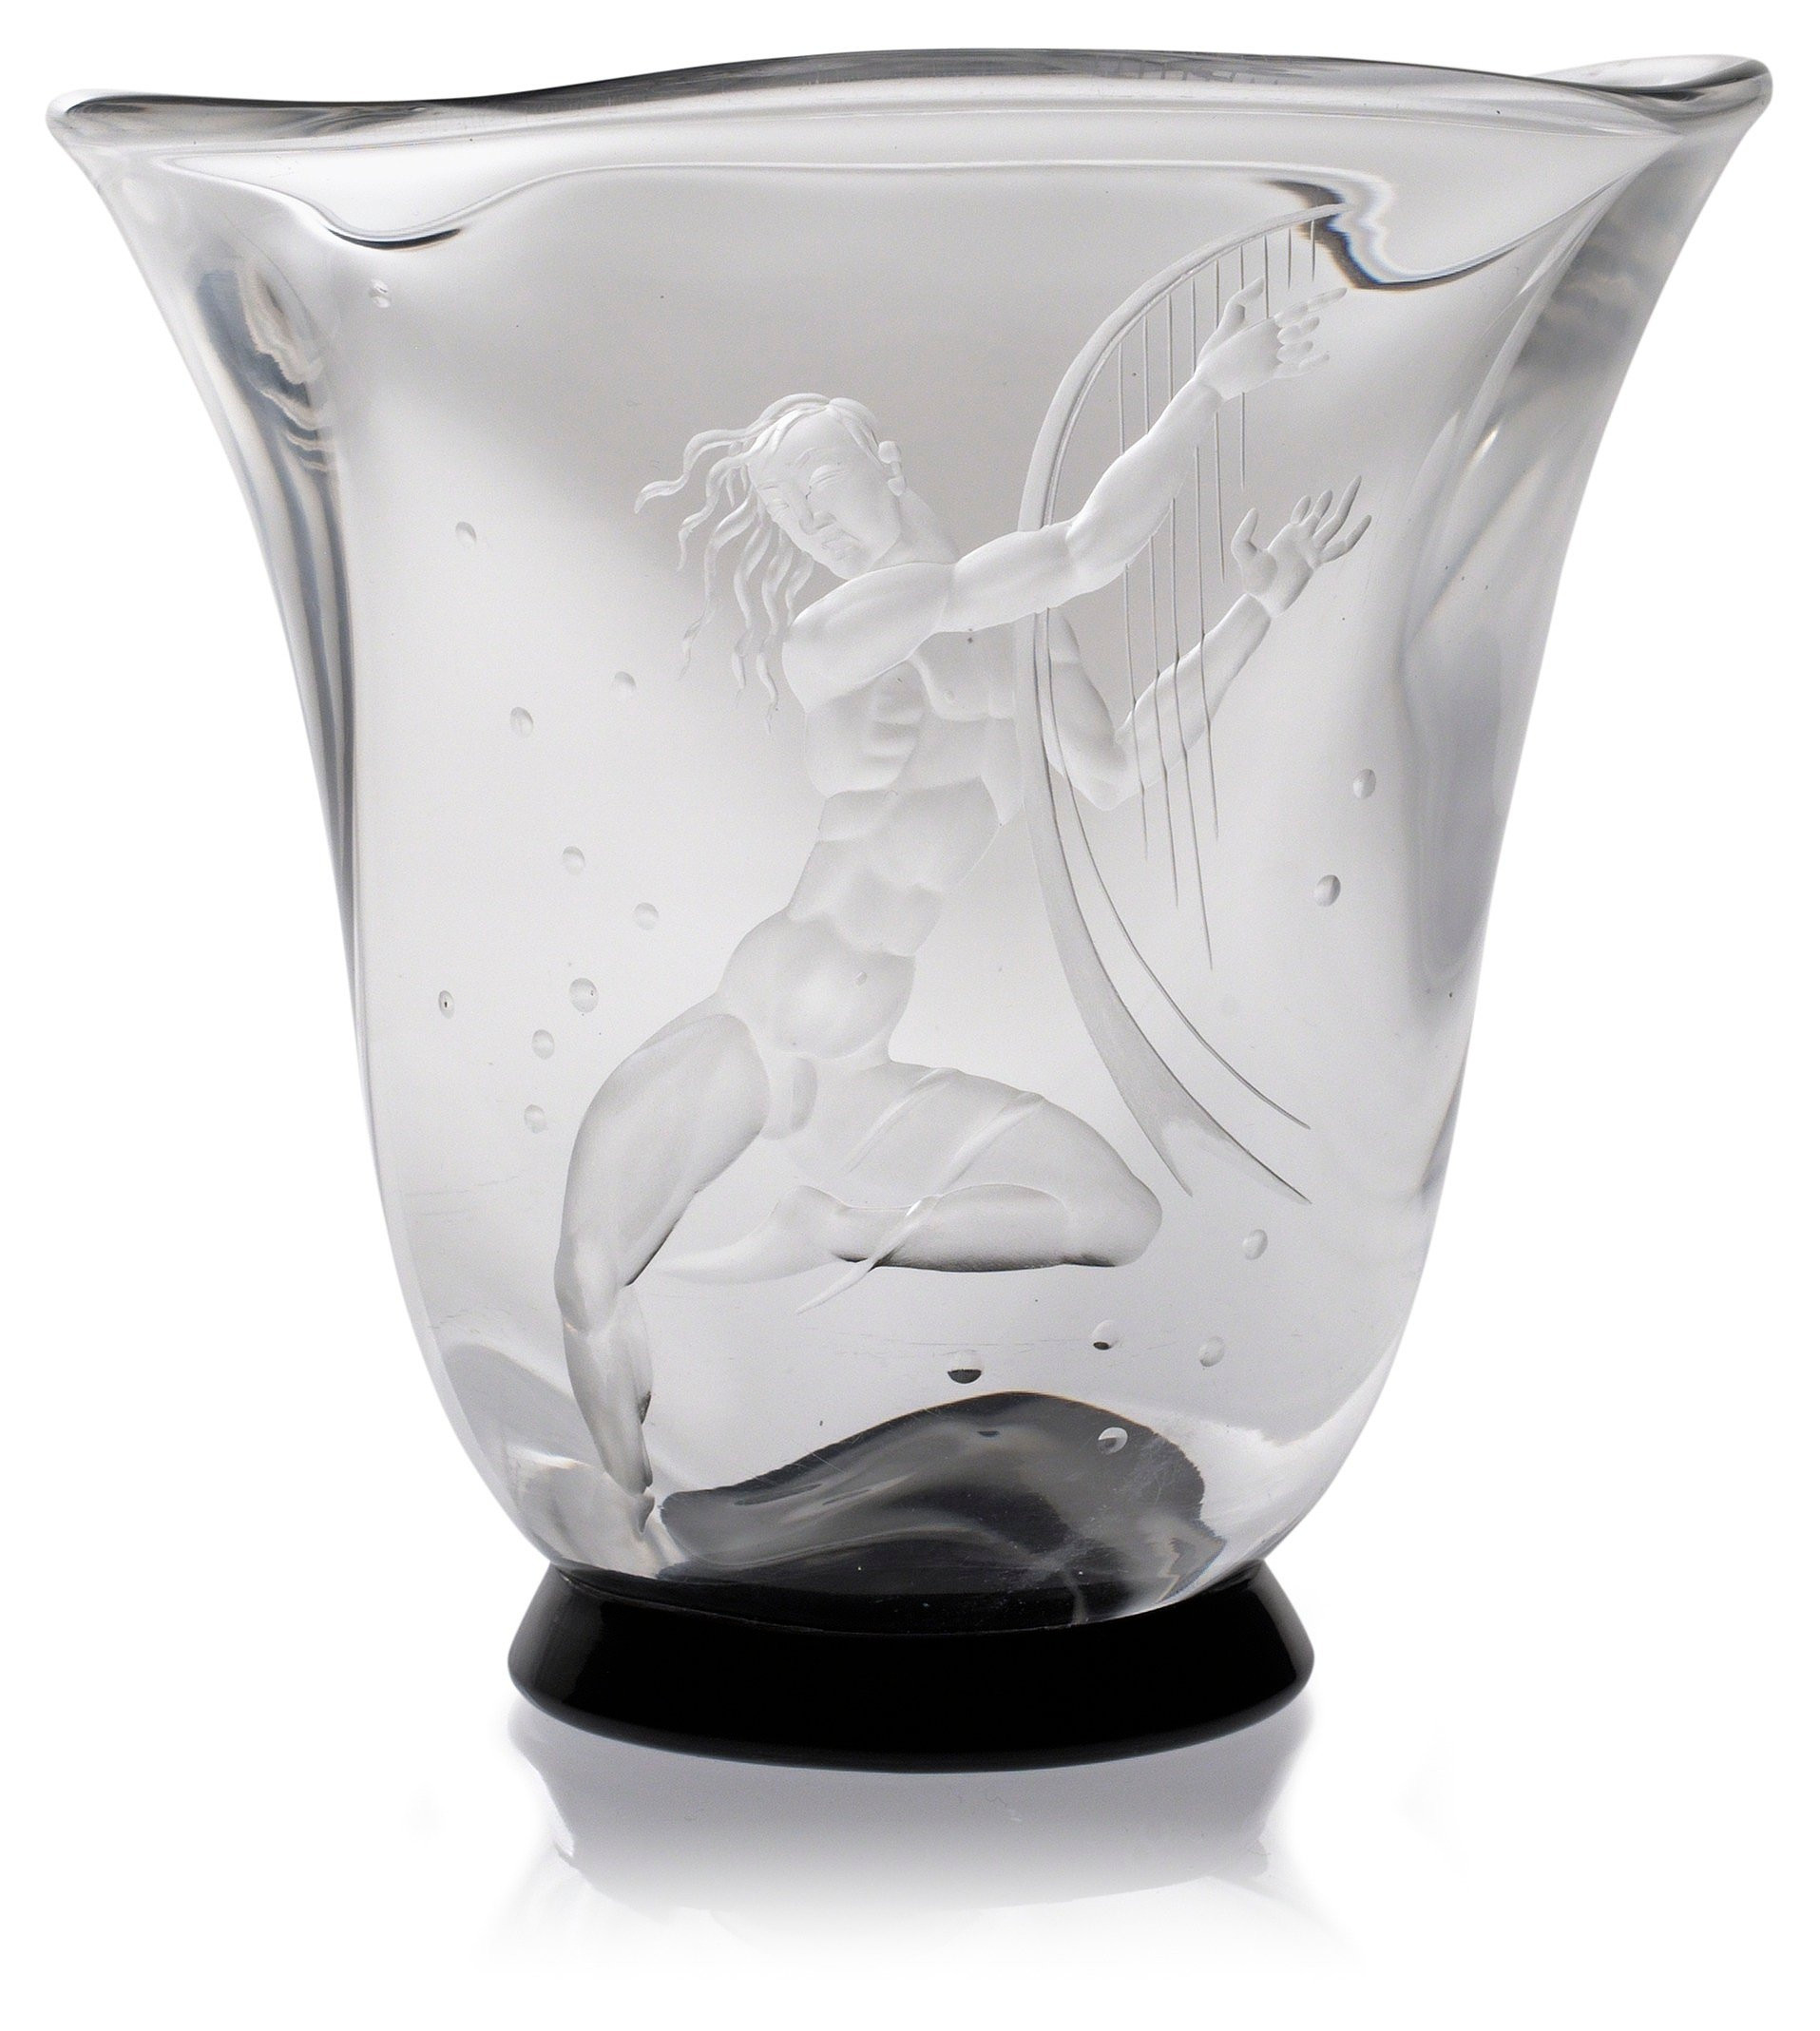 25 Ideal orrefors Vase Vintage 2024 free download orrefors vase vintage of a vicke lindstrand engraved glass vase by orrefors 1933 bukowskis pertaining to 3880013 fullsize